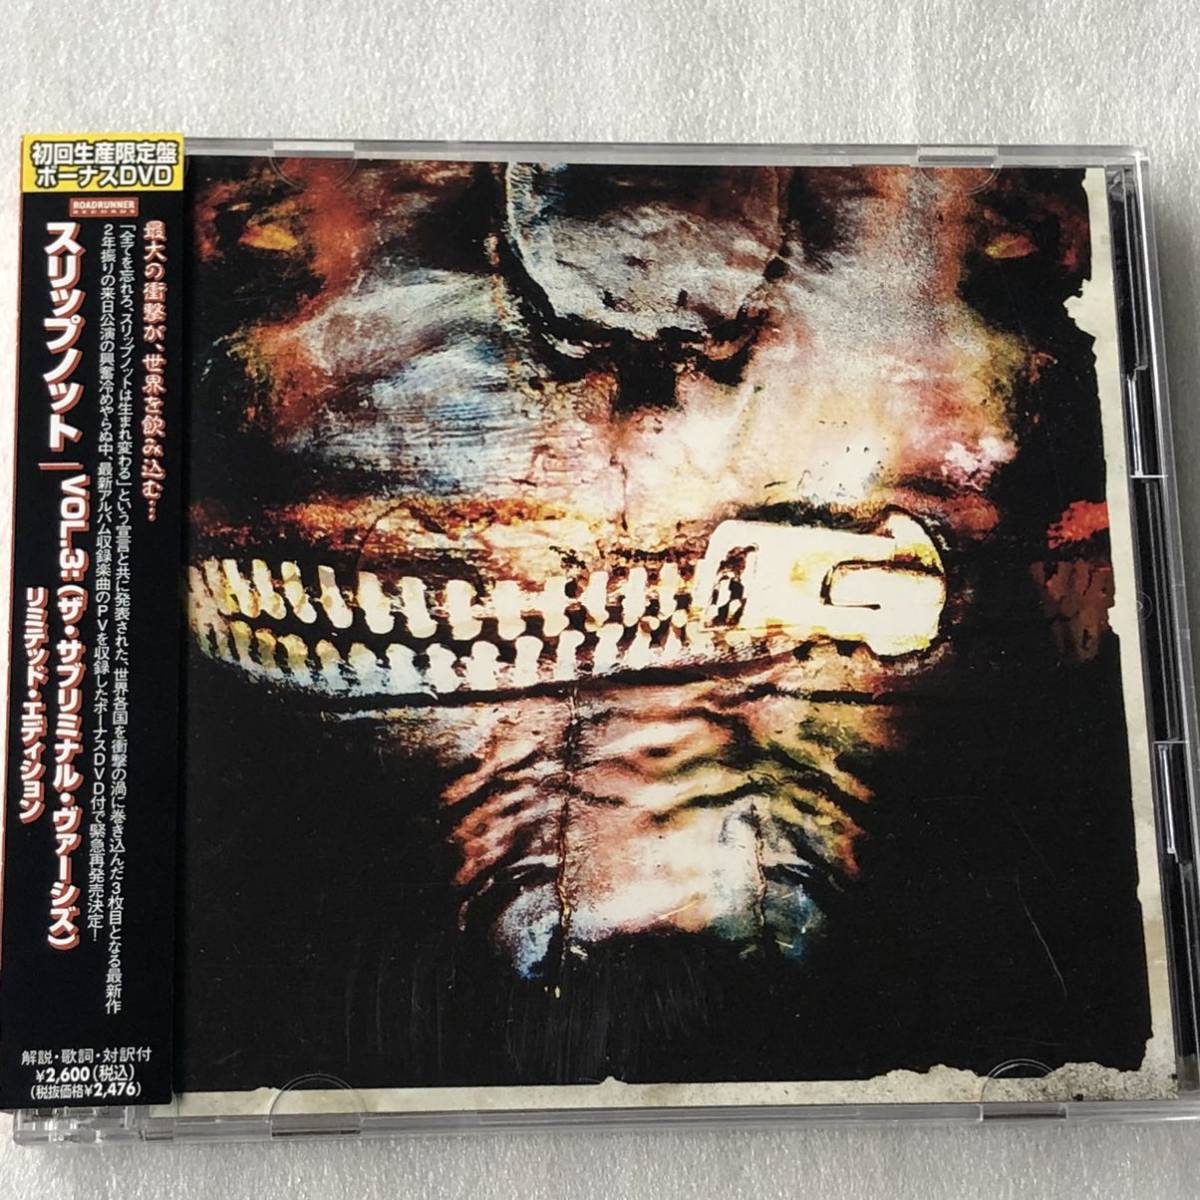 中古CD Slipknot スリップノット/Vol. 3: (The Subliminal Verses)(CD+DVD) (2004年)の画像1